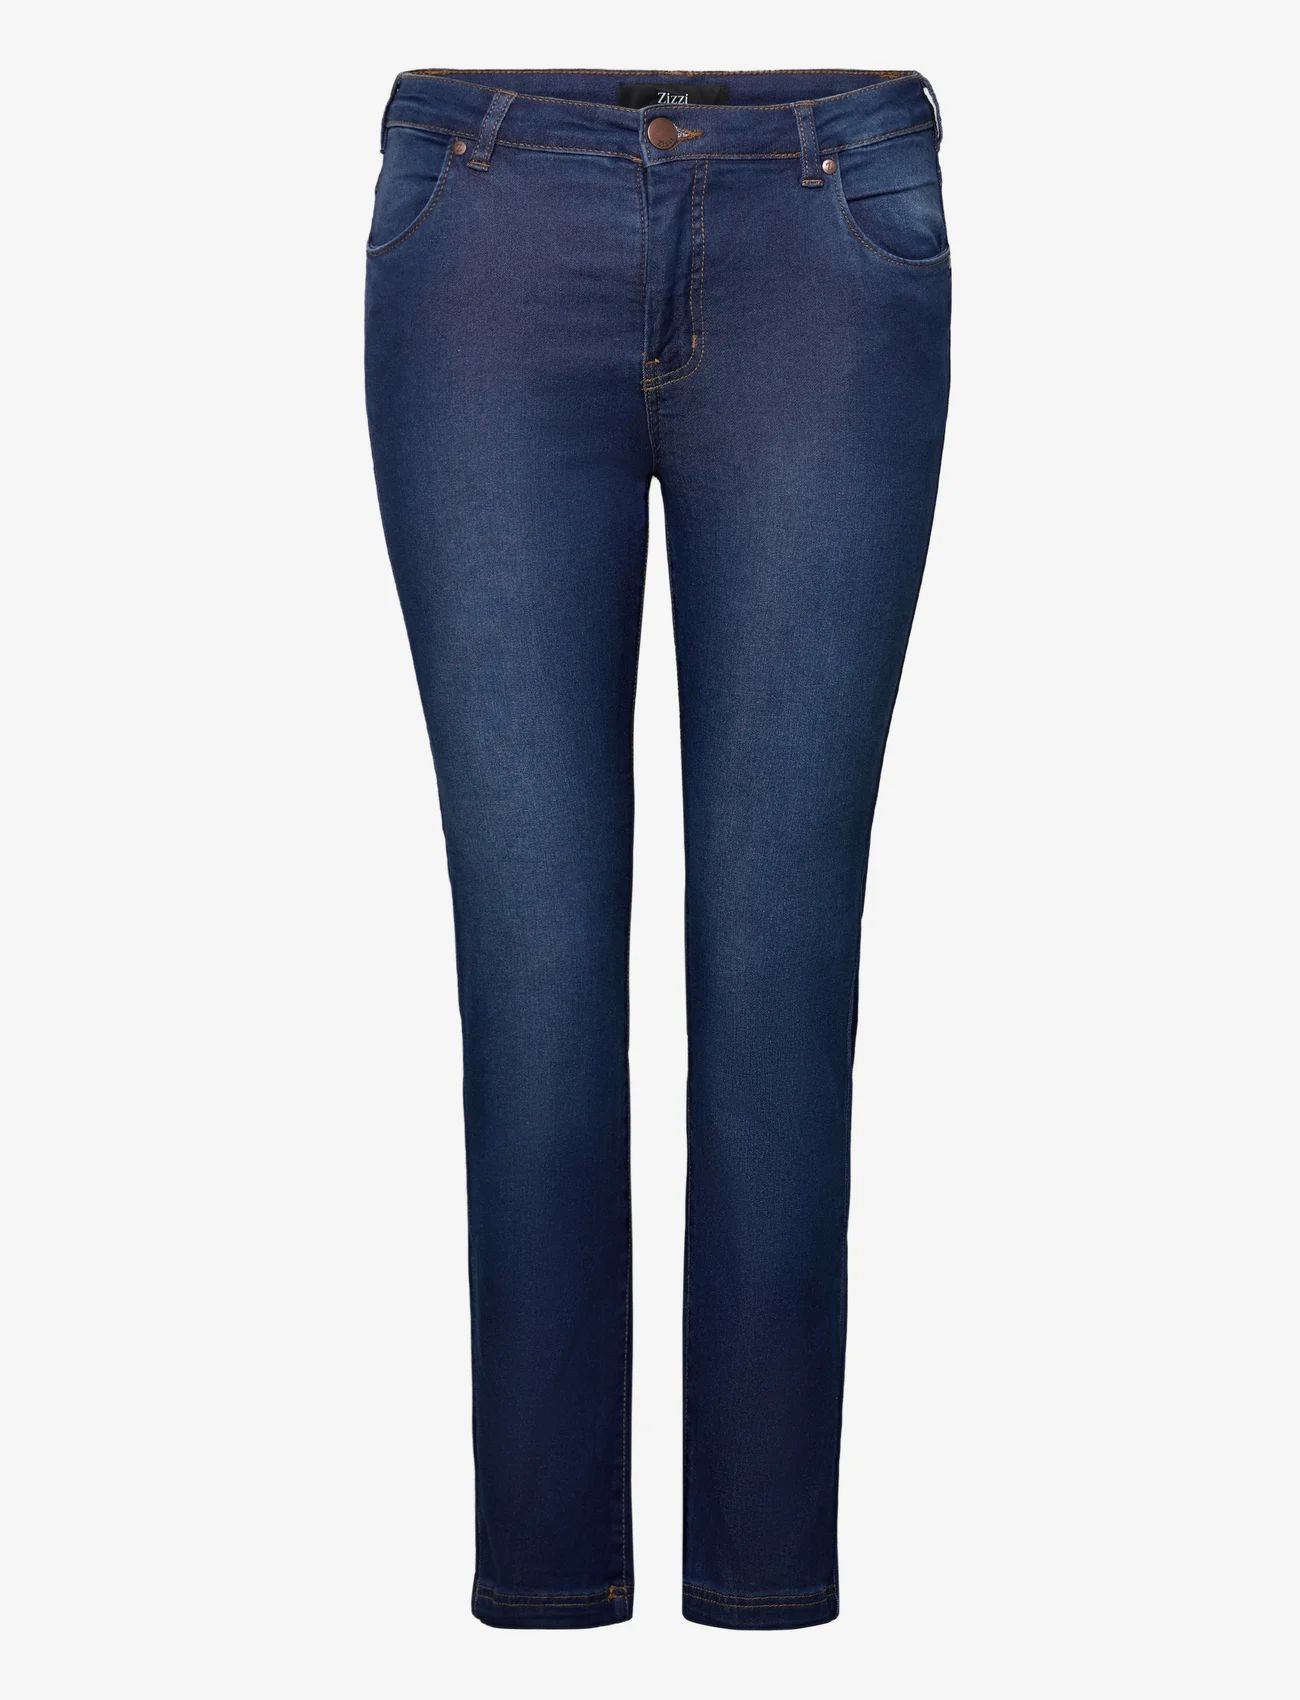 Zizzi - JEANS, LONG, EMILY - slim jeans - blue - 0